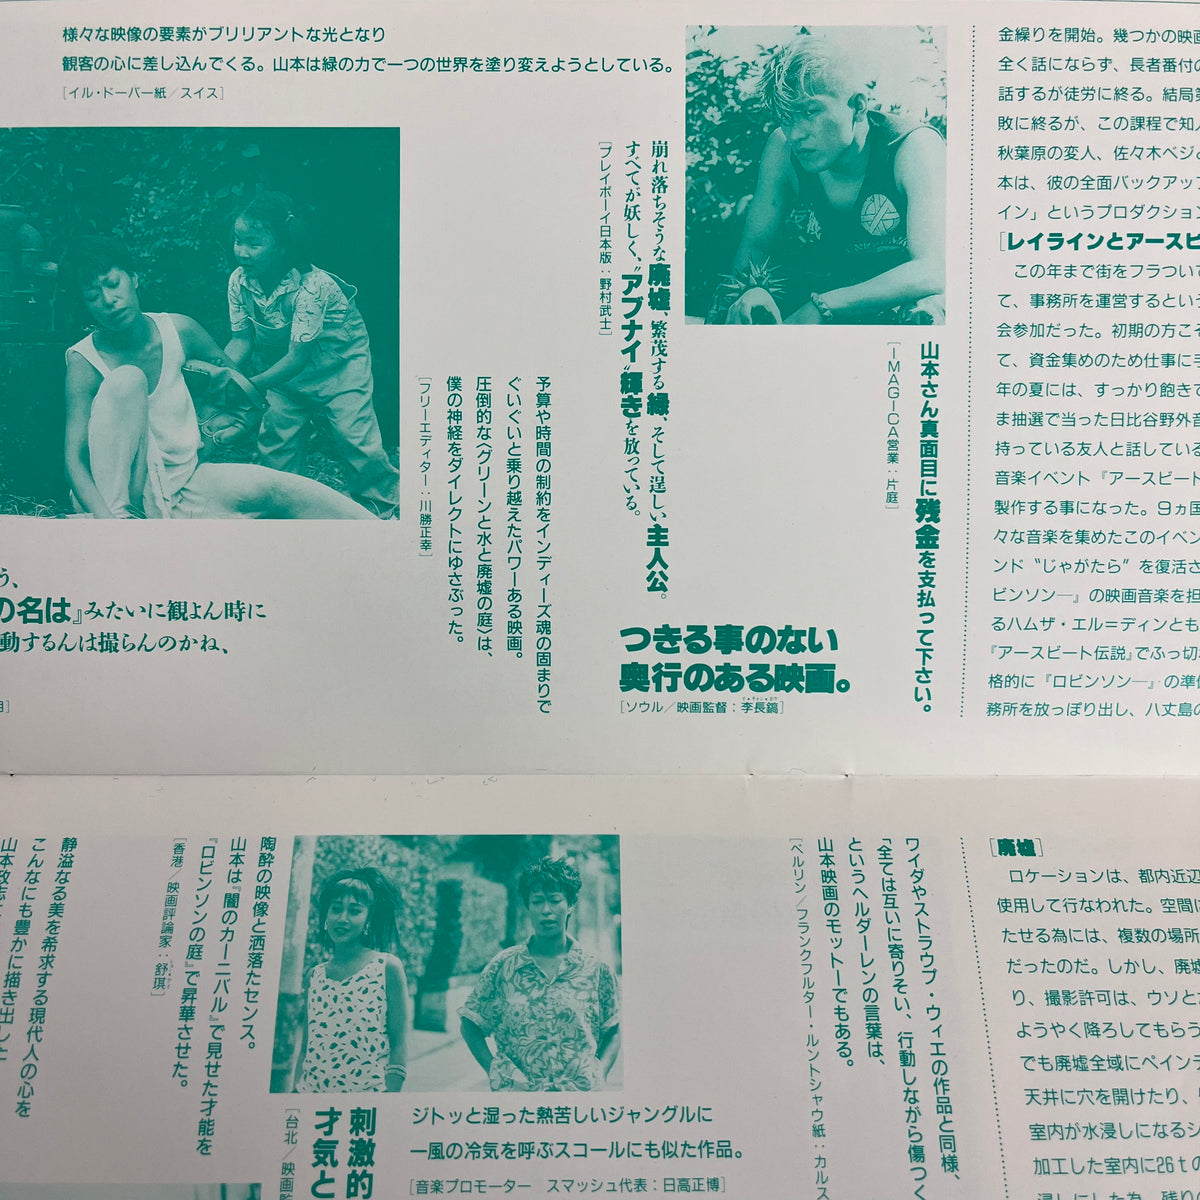 Vintage Masashi Yamamoto &quot;Robinson&#39;s Garden&quot; Promotional Flyer &amp; Leaflet